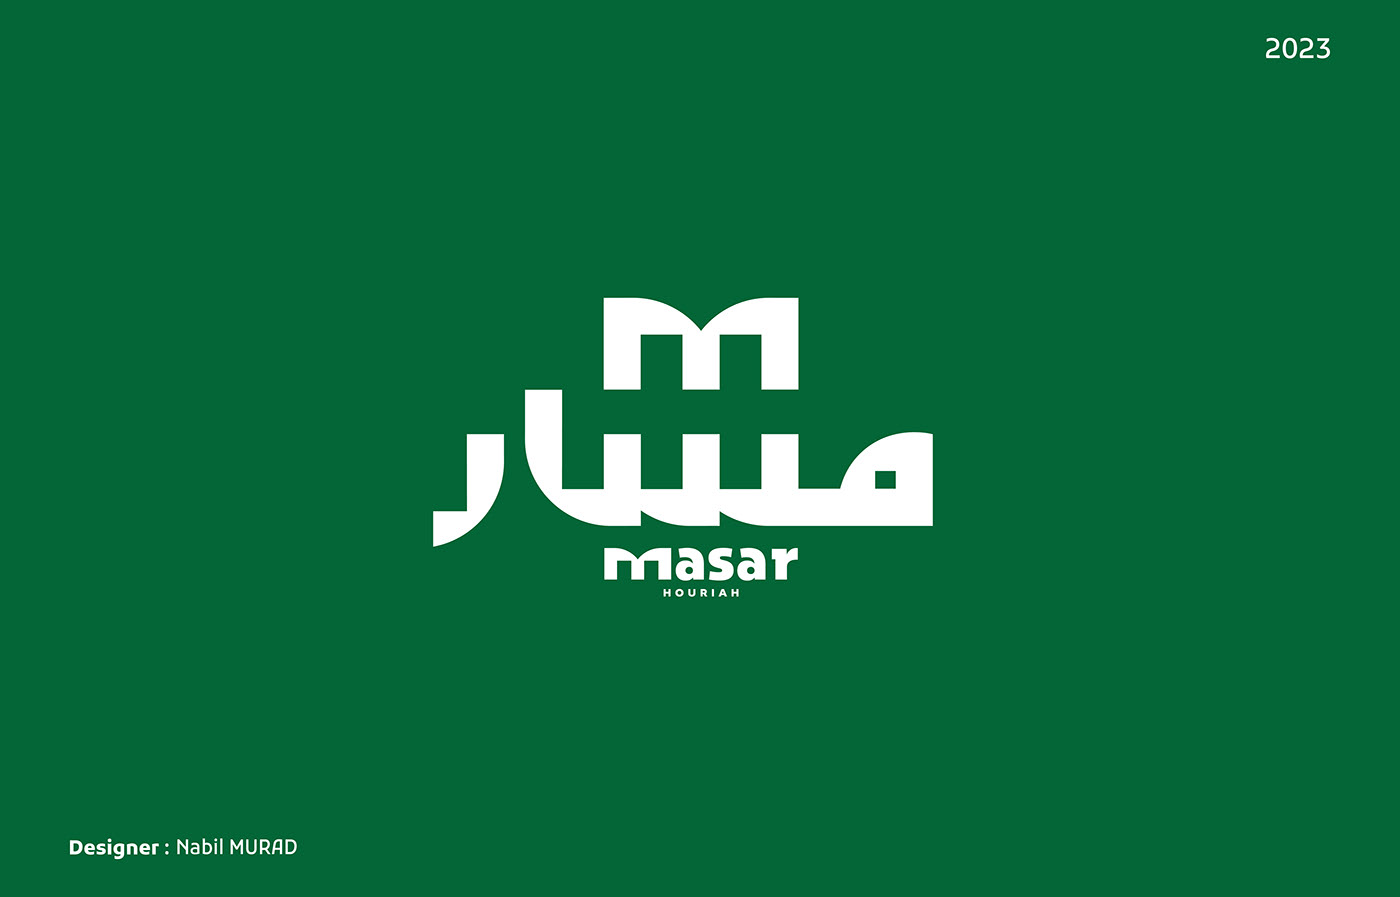 logo gaza arabic logos Logotype logofolio 2023 palestine brand identity Маркс 토론토벳토토